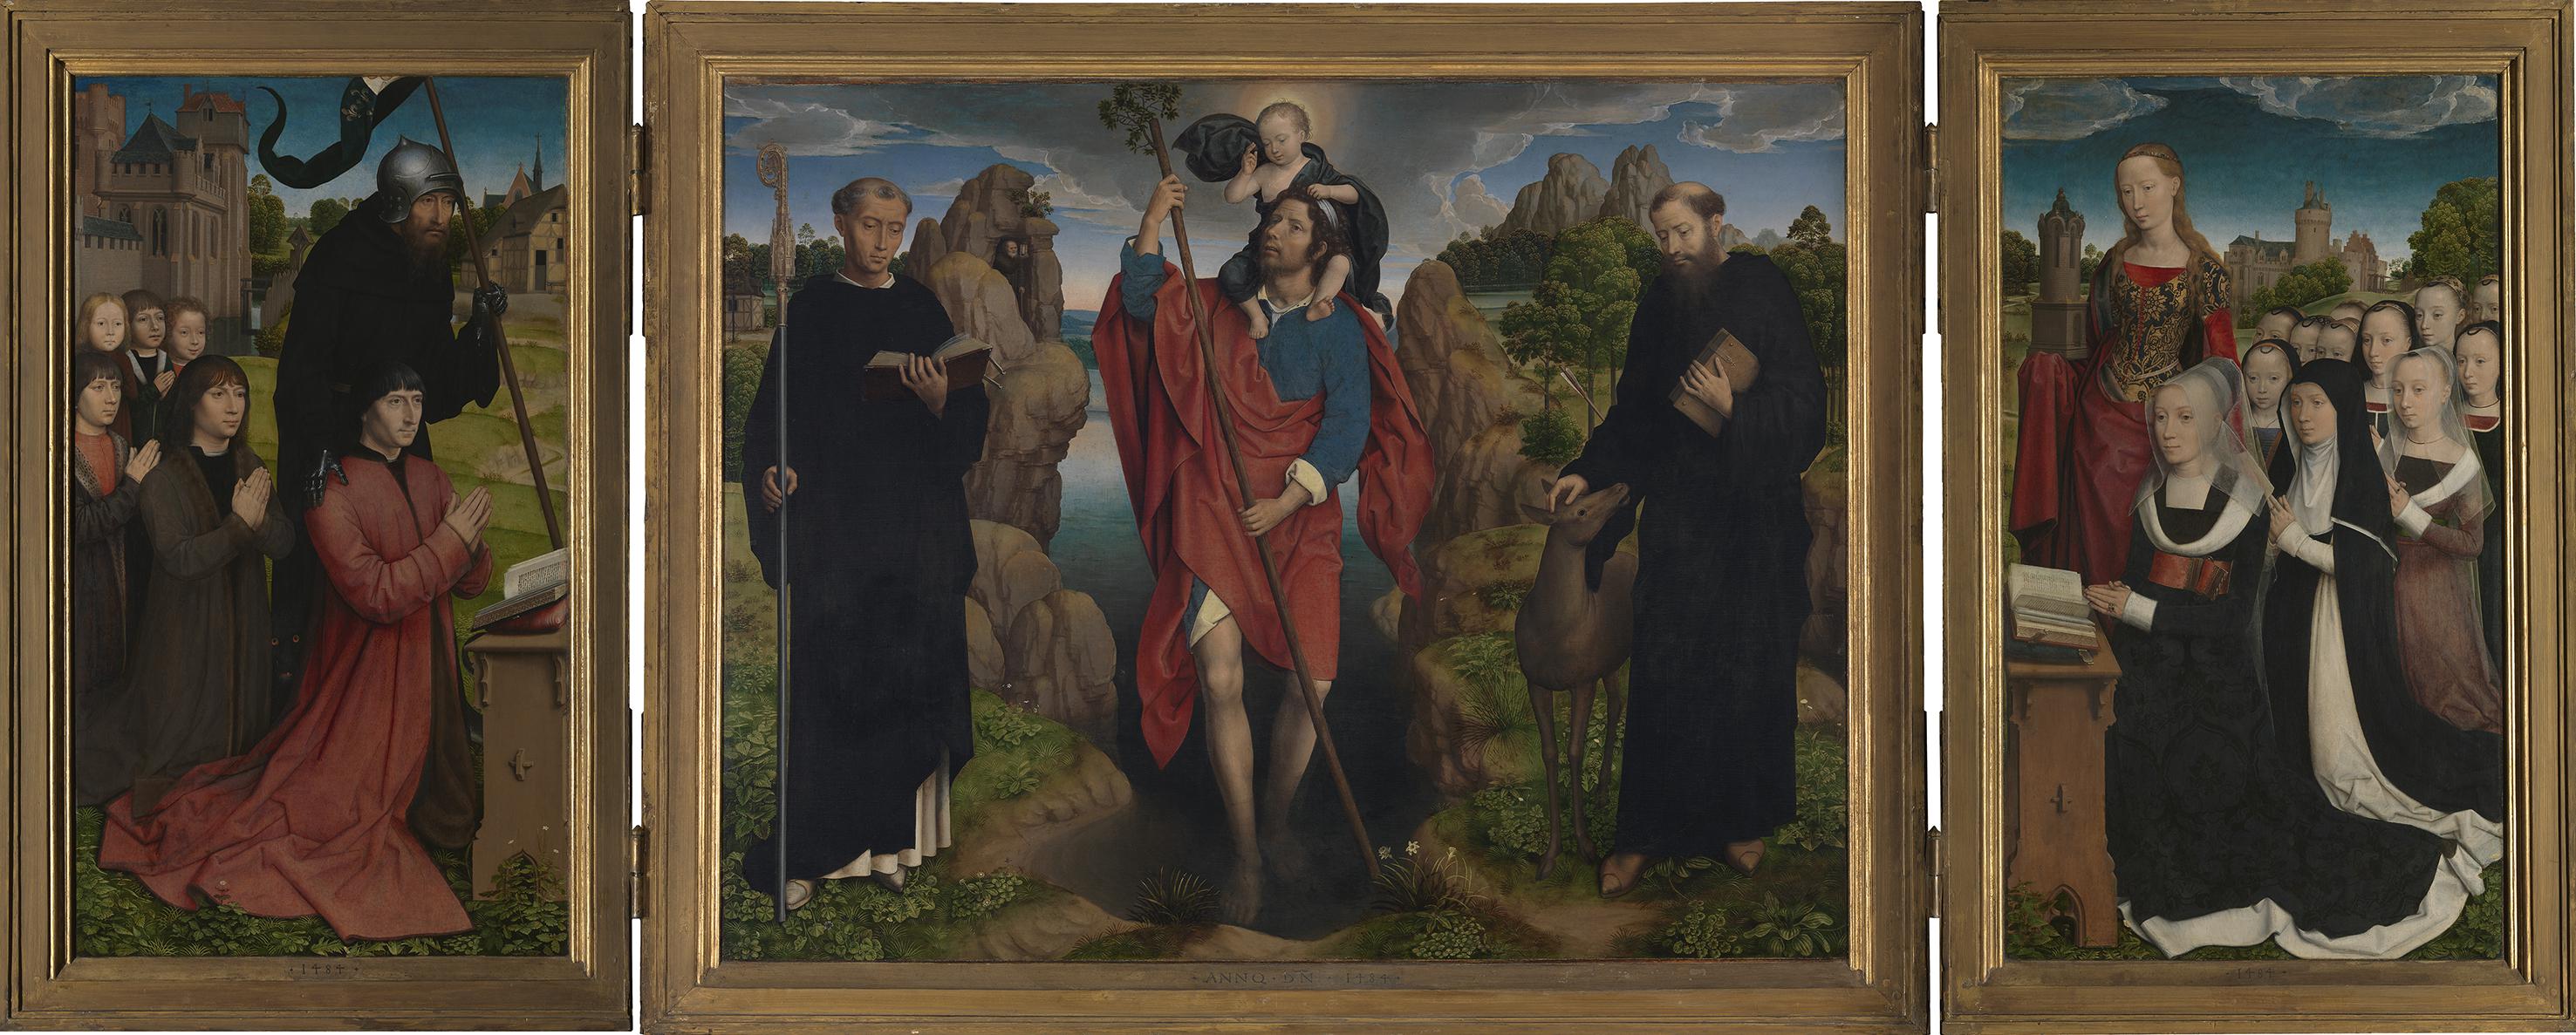 Hans Memling, Trittico Moreel I santi Cristoforo, Egidio e Mauro (recto) San Giovanni Battista e San Giorgio (verso). Datato 1484. Olio su tavola